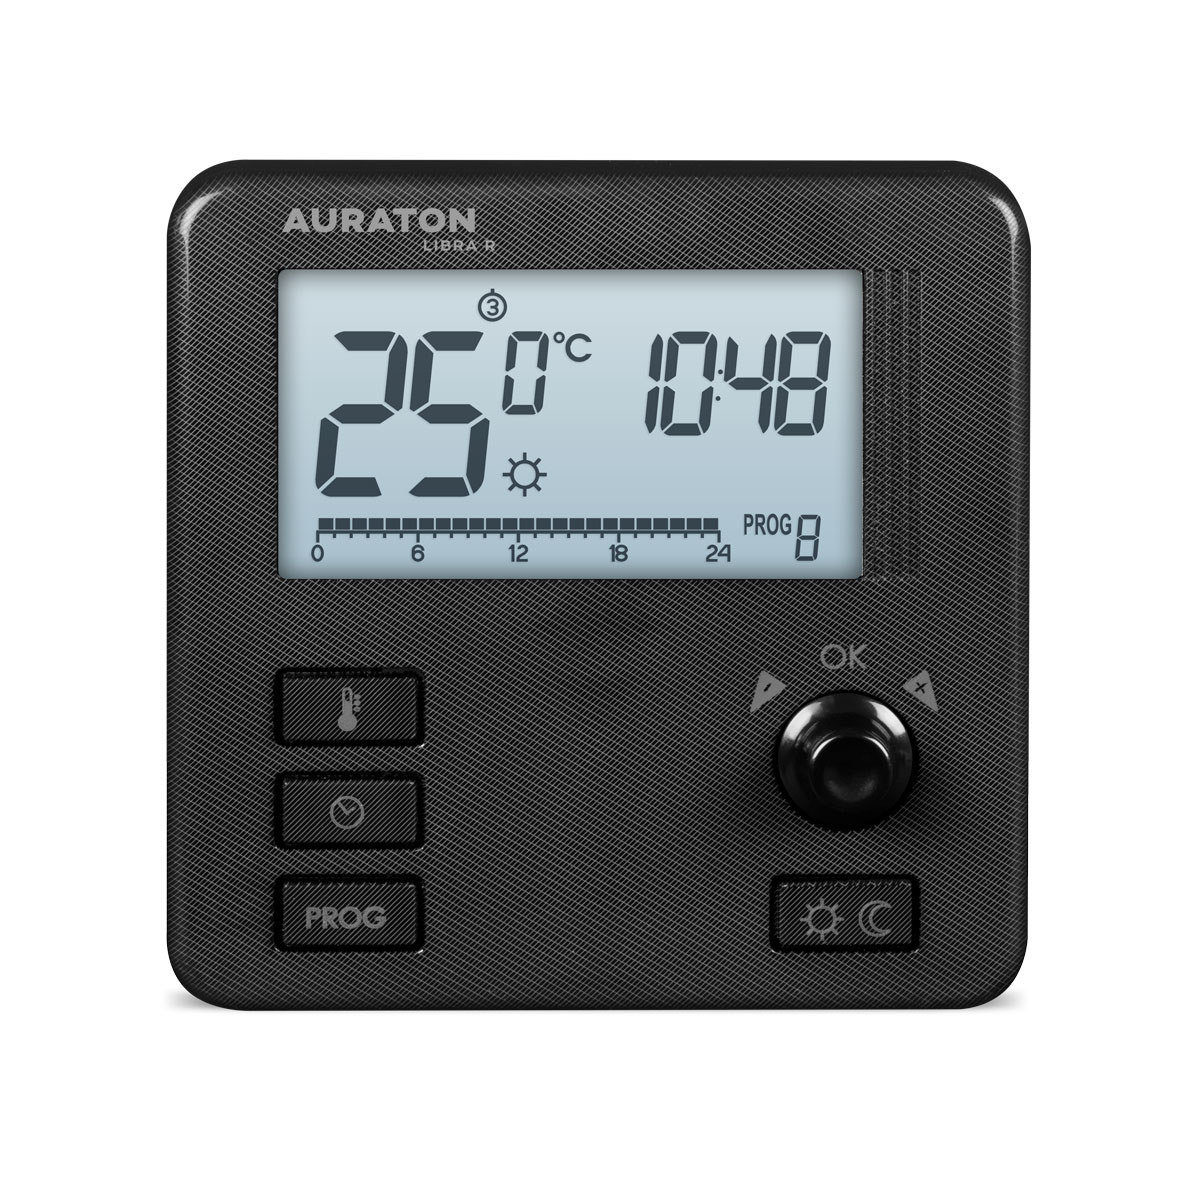 Auraton Libra R czarny tygodniowy, bezprzewodowy regulator temperatury (nadajnik)